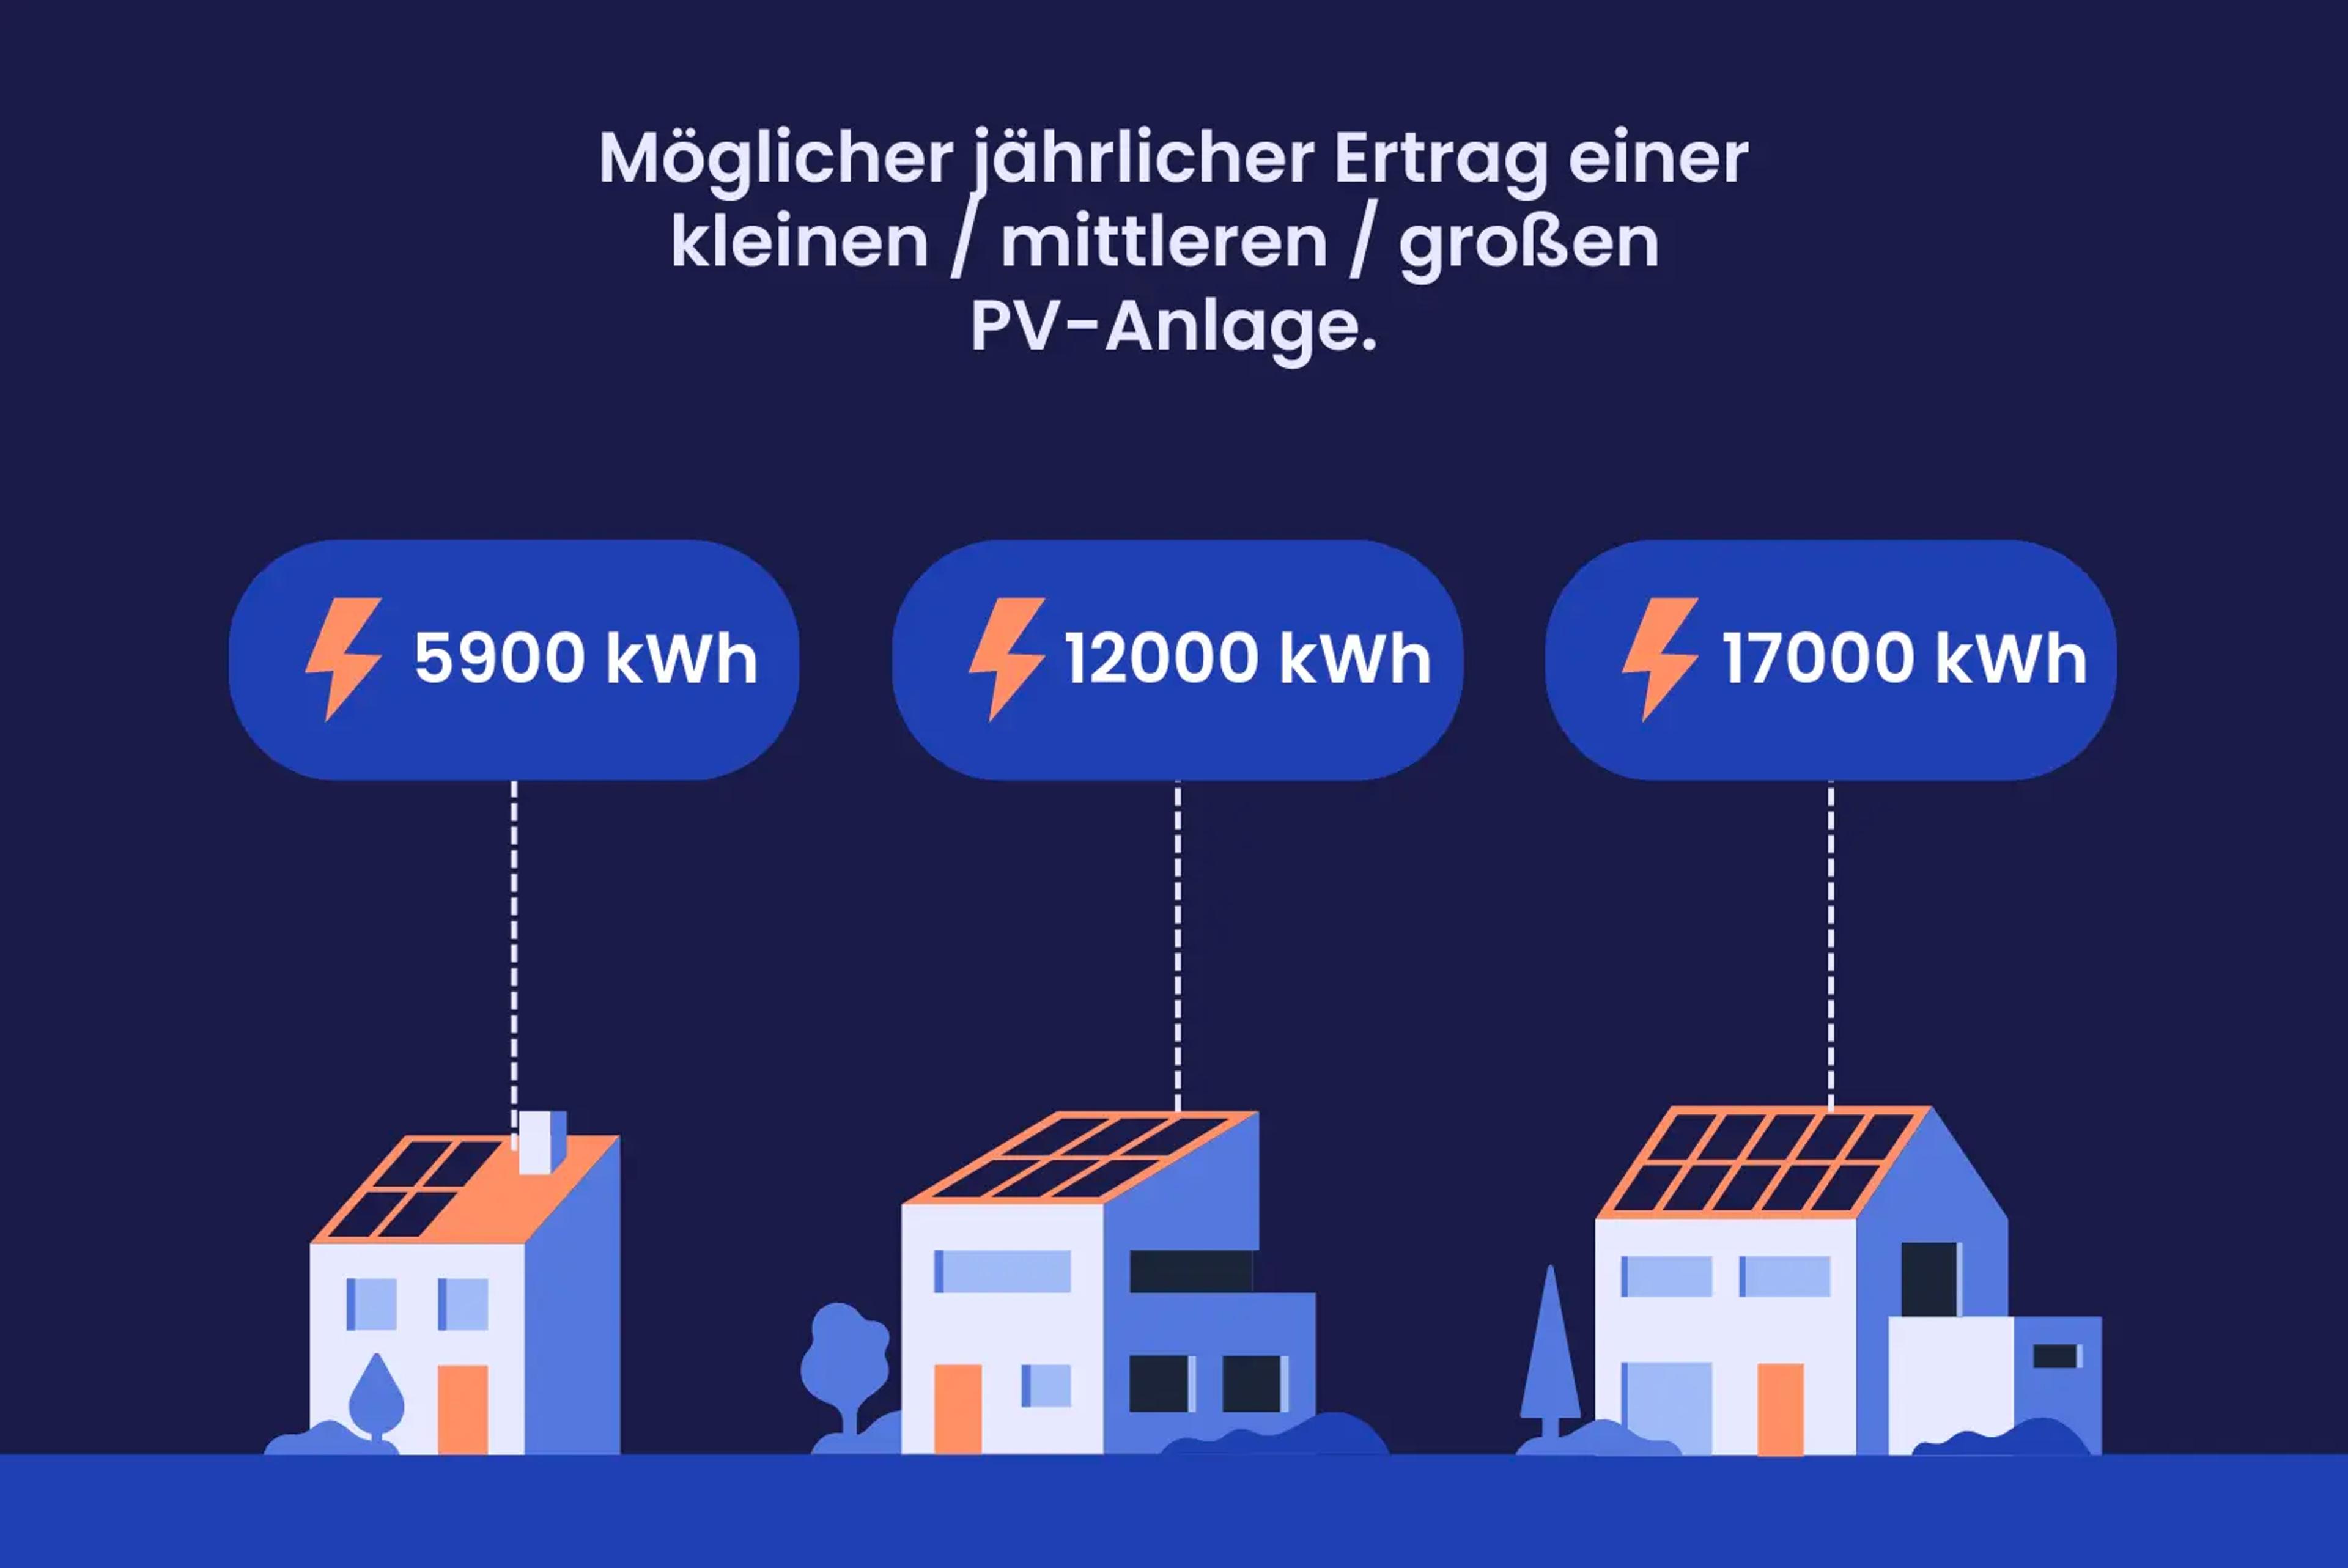 Eine Grafik, die zeigt, wie viele kWh Solaranlagen in Berlin erzeugen können.